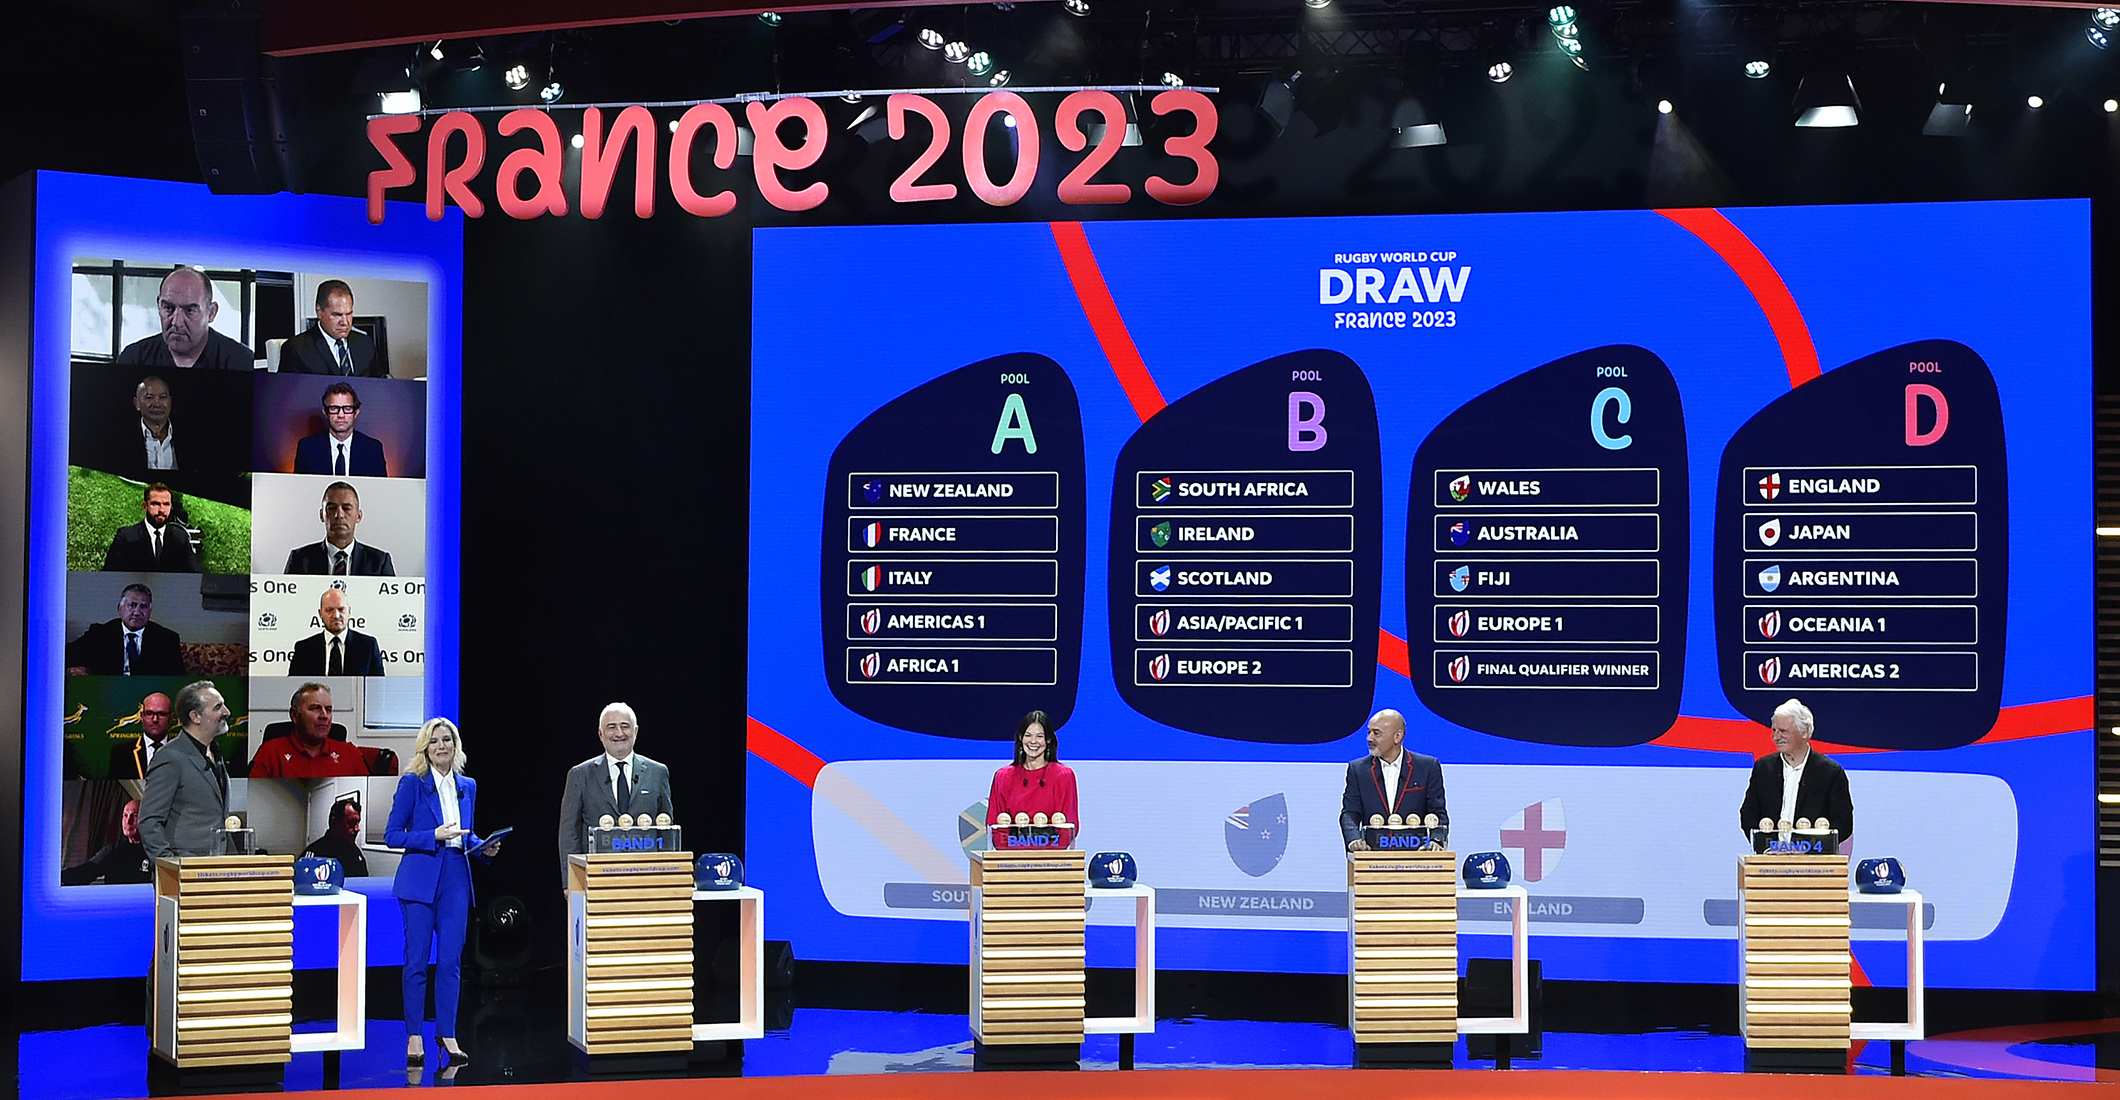 Le Calendrier Complet De La Coupe Du Monde 2023 Coupe Du Monde 2023